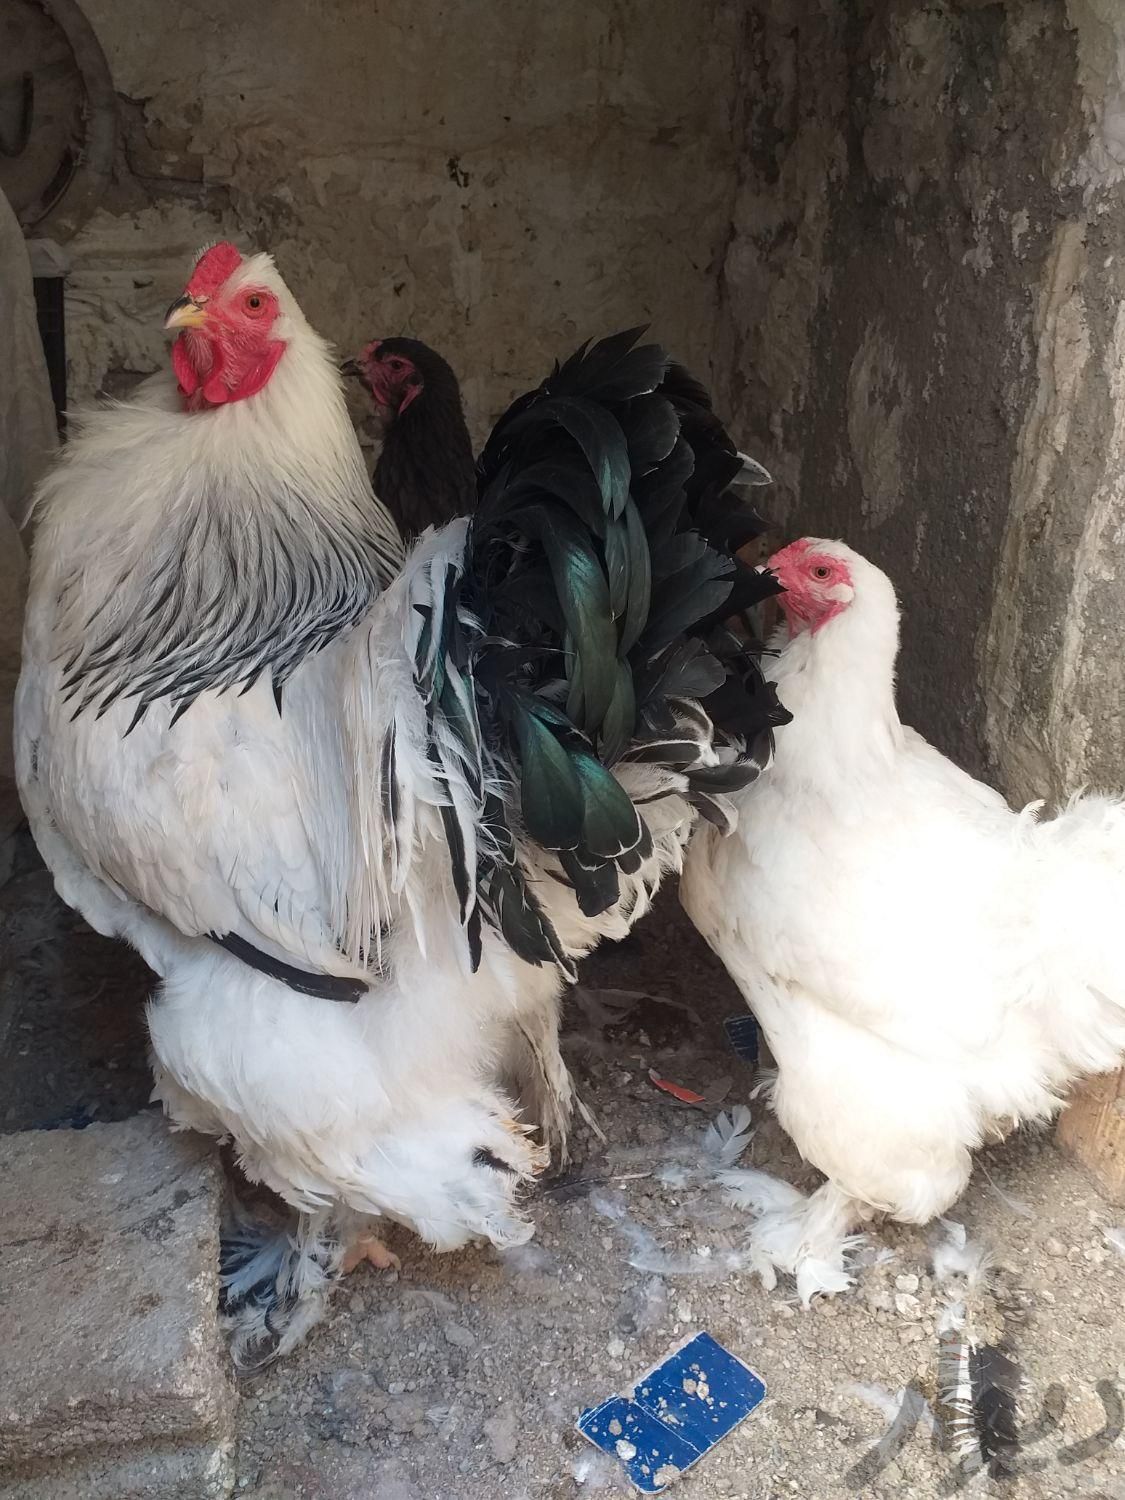 مرغ و خروس برهما|حیوانات مزرعه|کرج, کلاک نو|دیوار